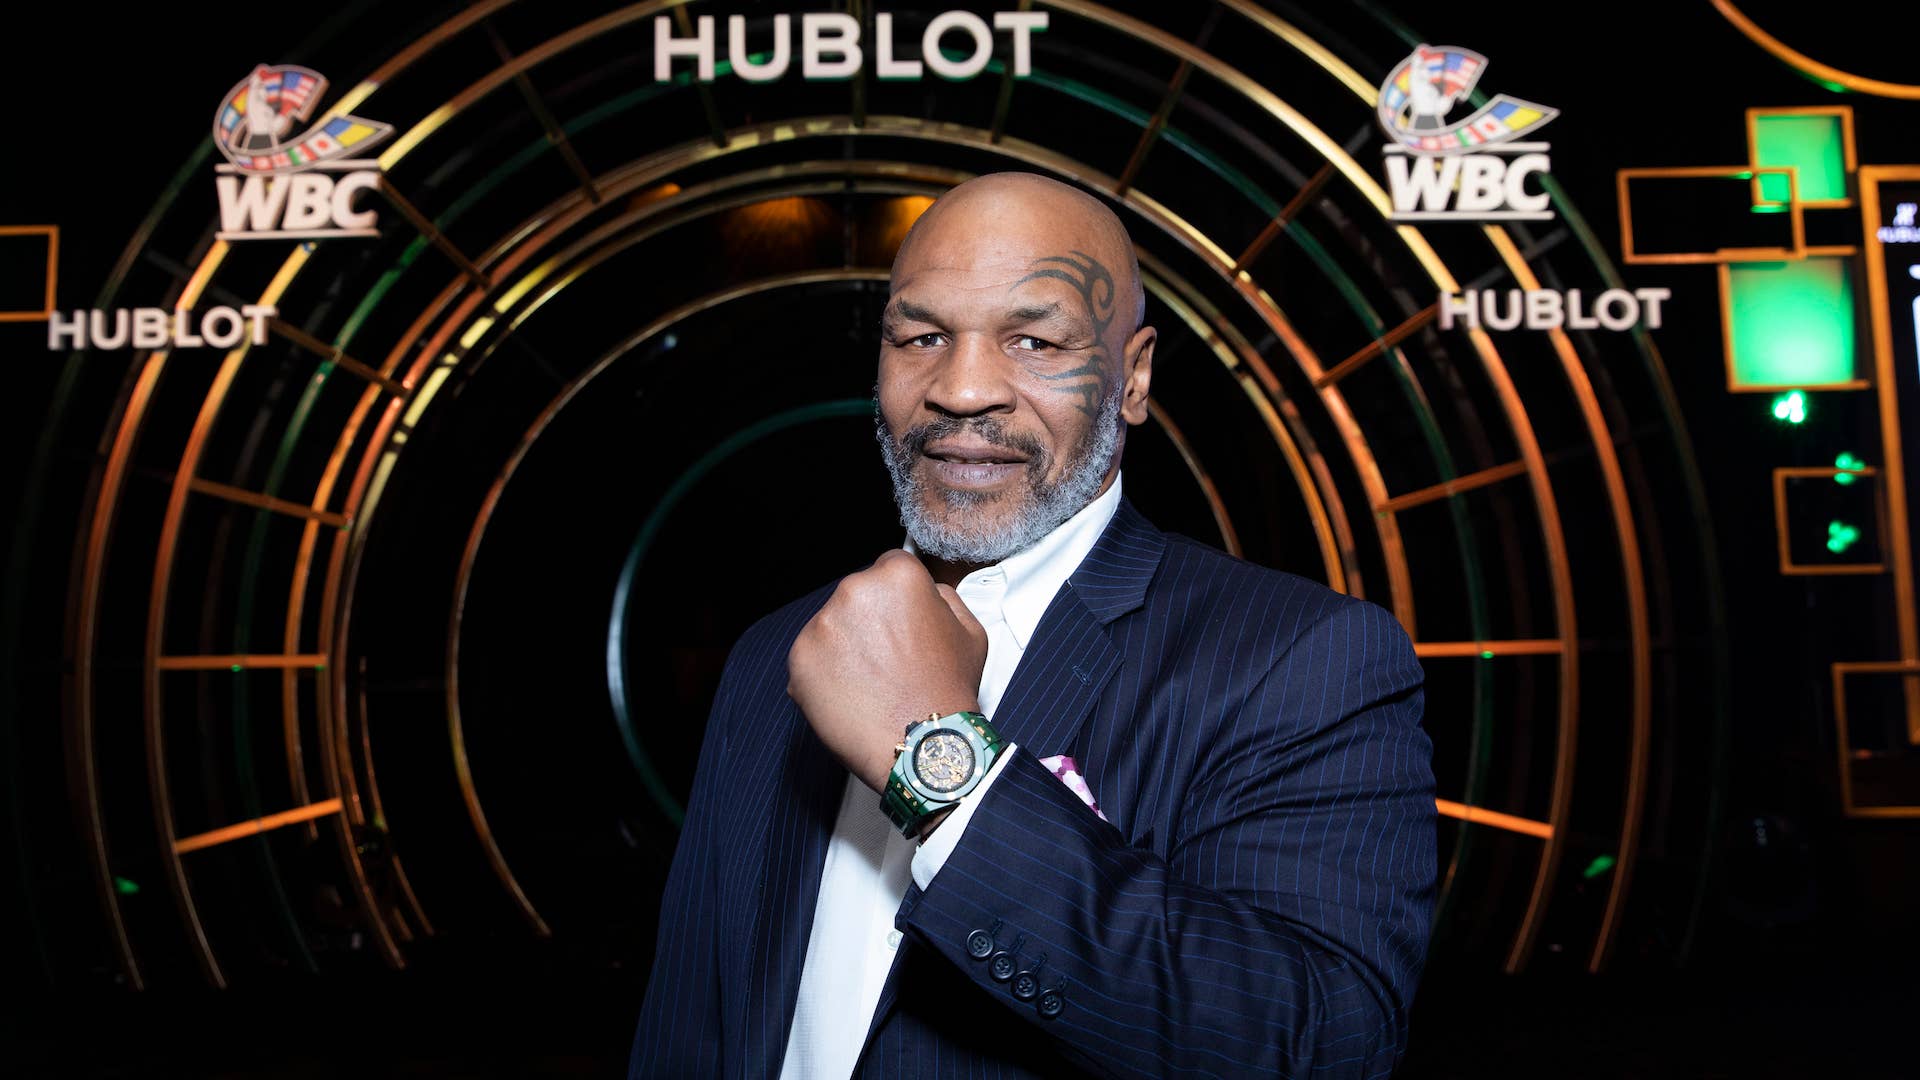 Mike Tyson attends the Hublot x WBC "Night of Champions" Gala